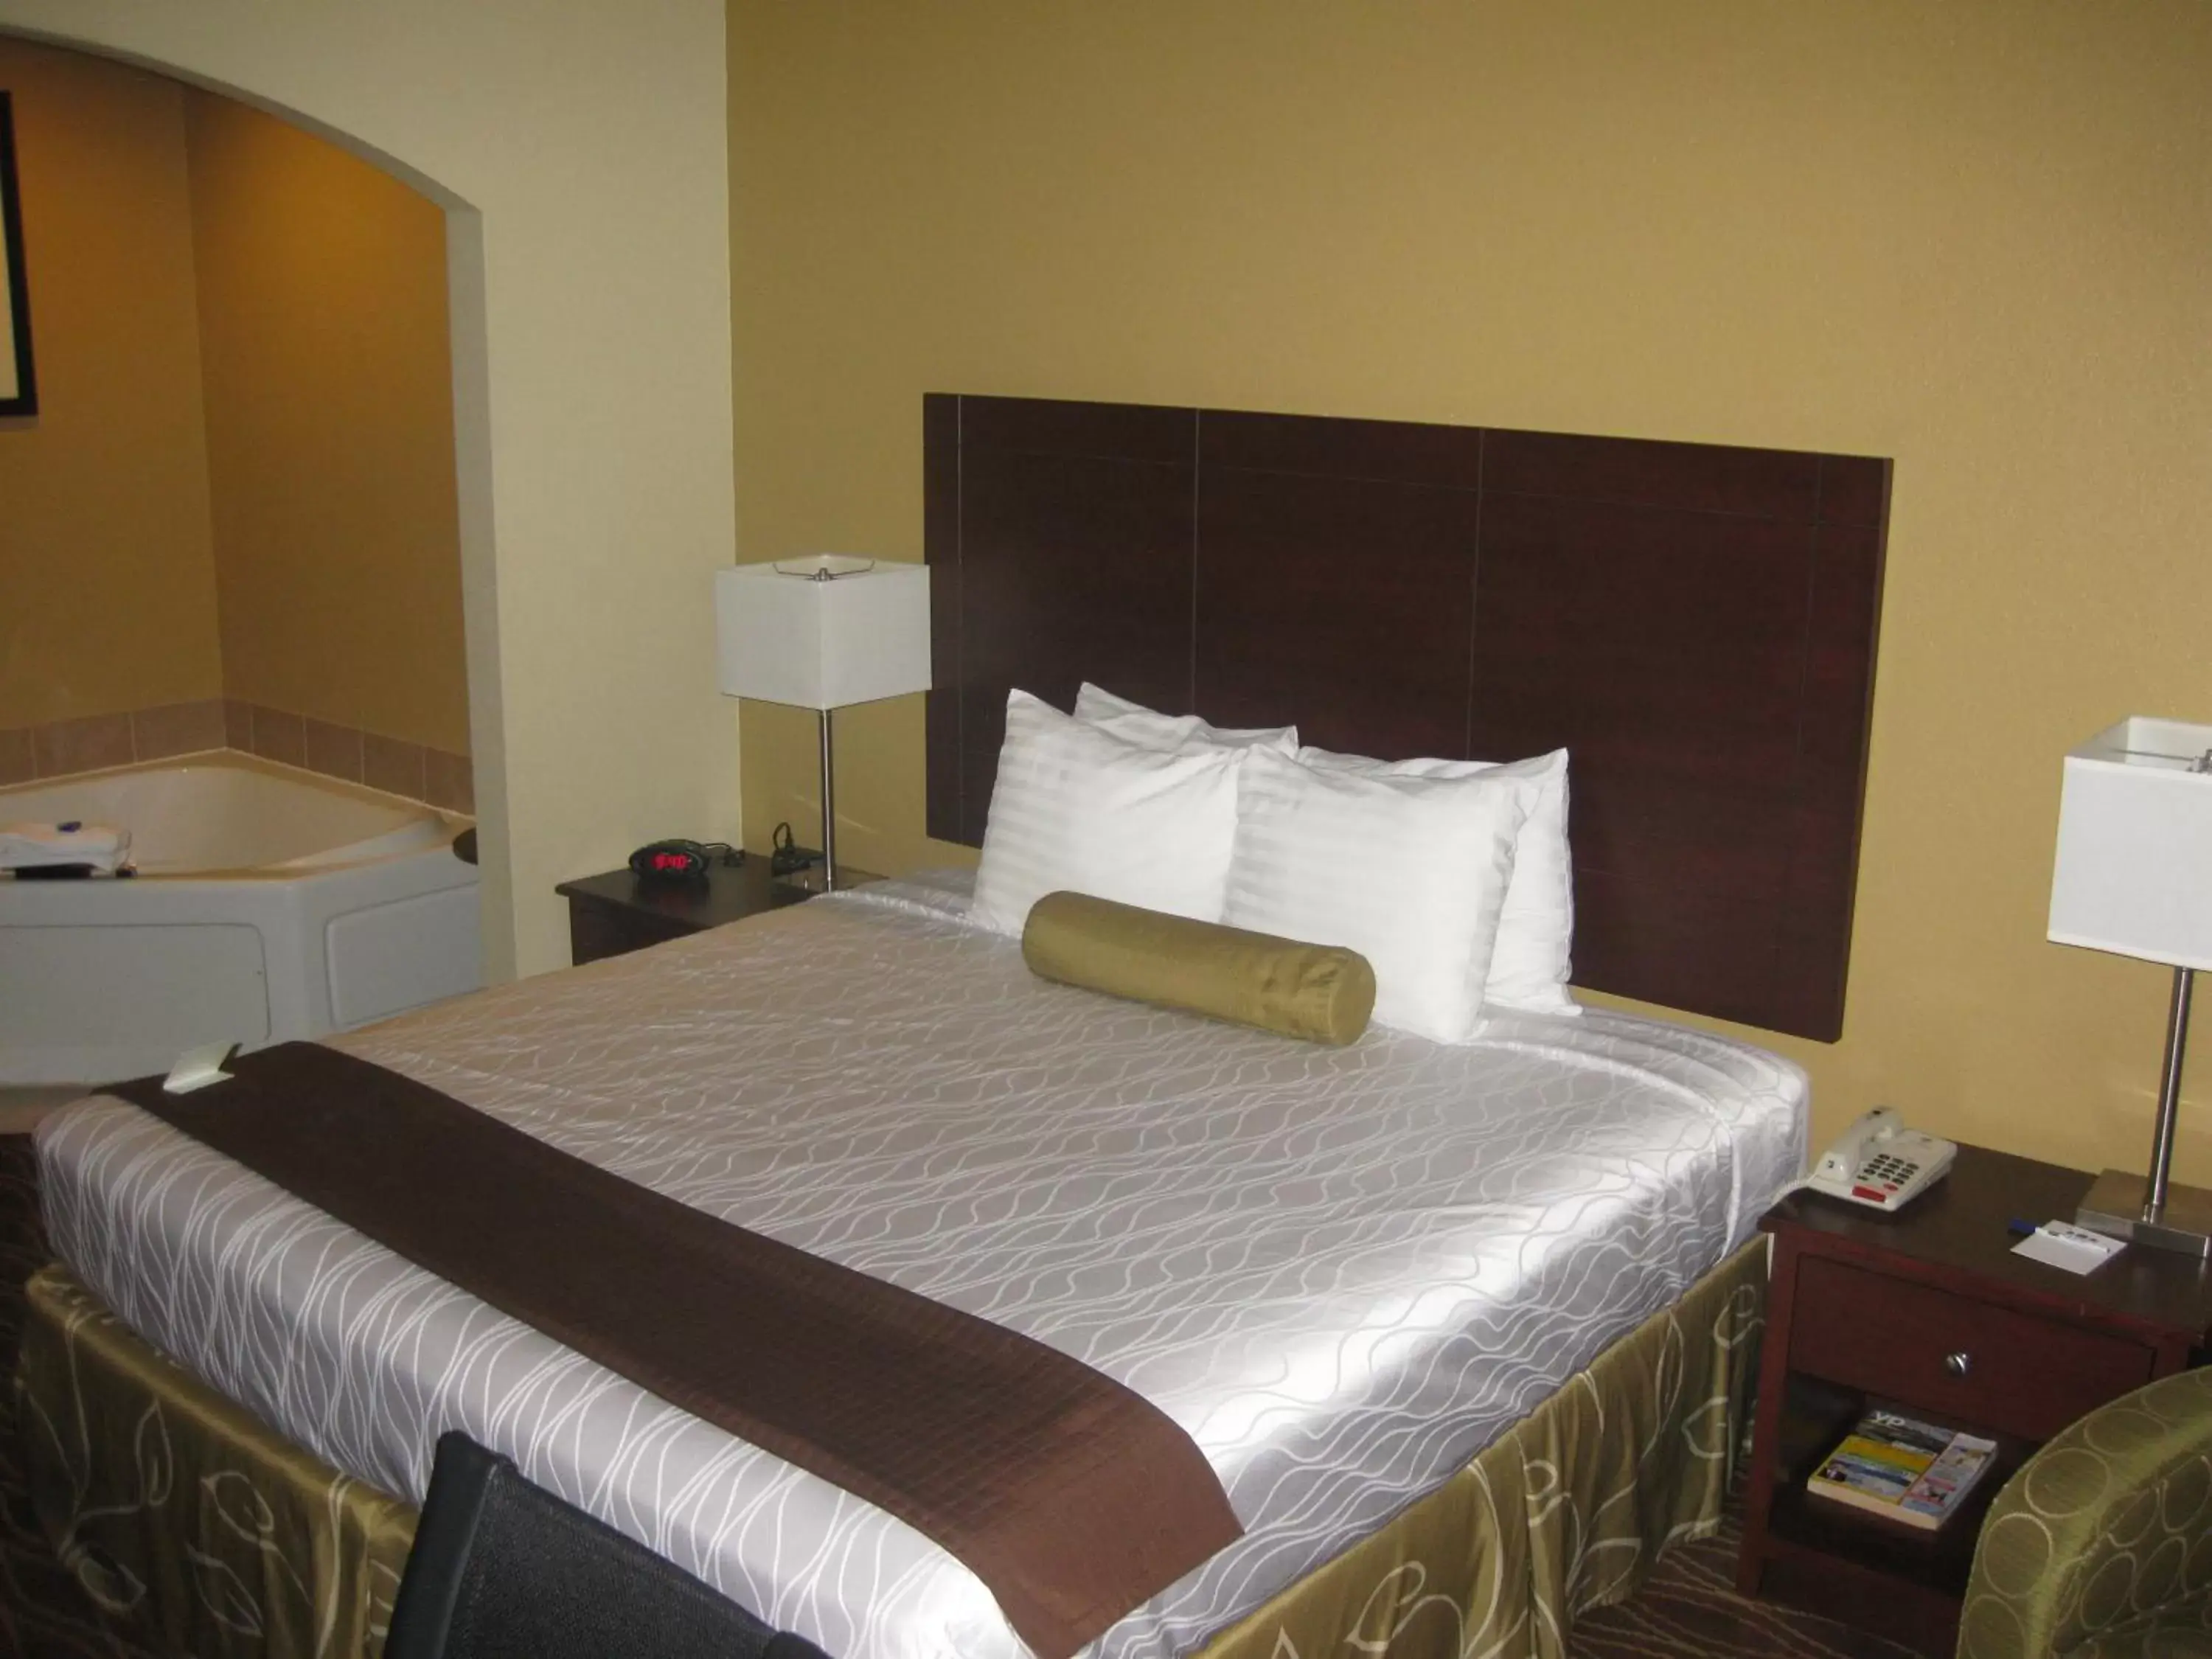 Bedroom, Room Photo in Best Western Plus Springfield Airport Inn